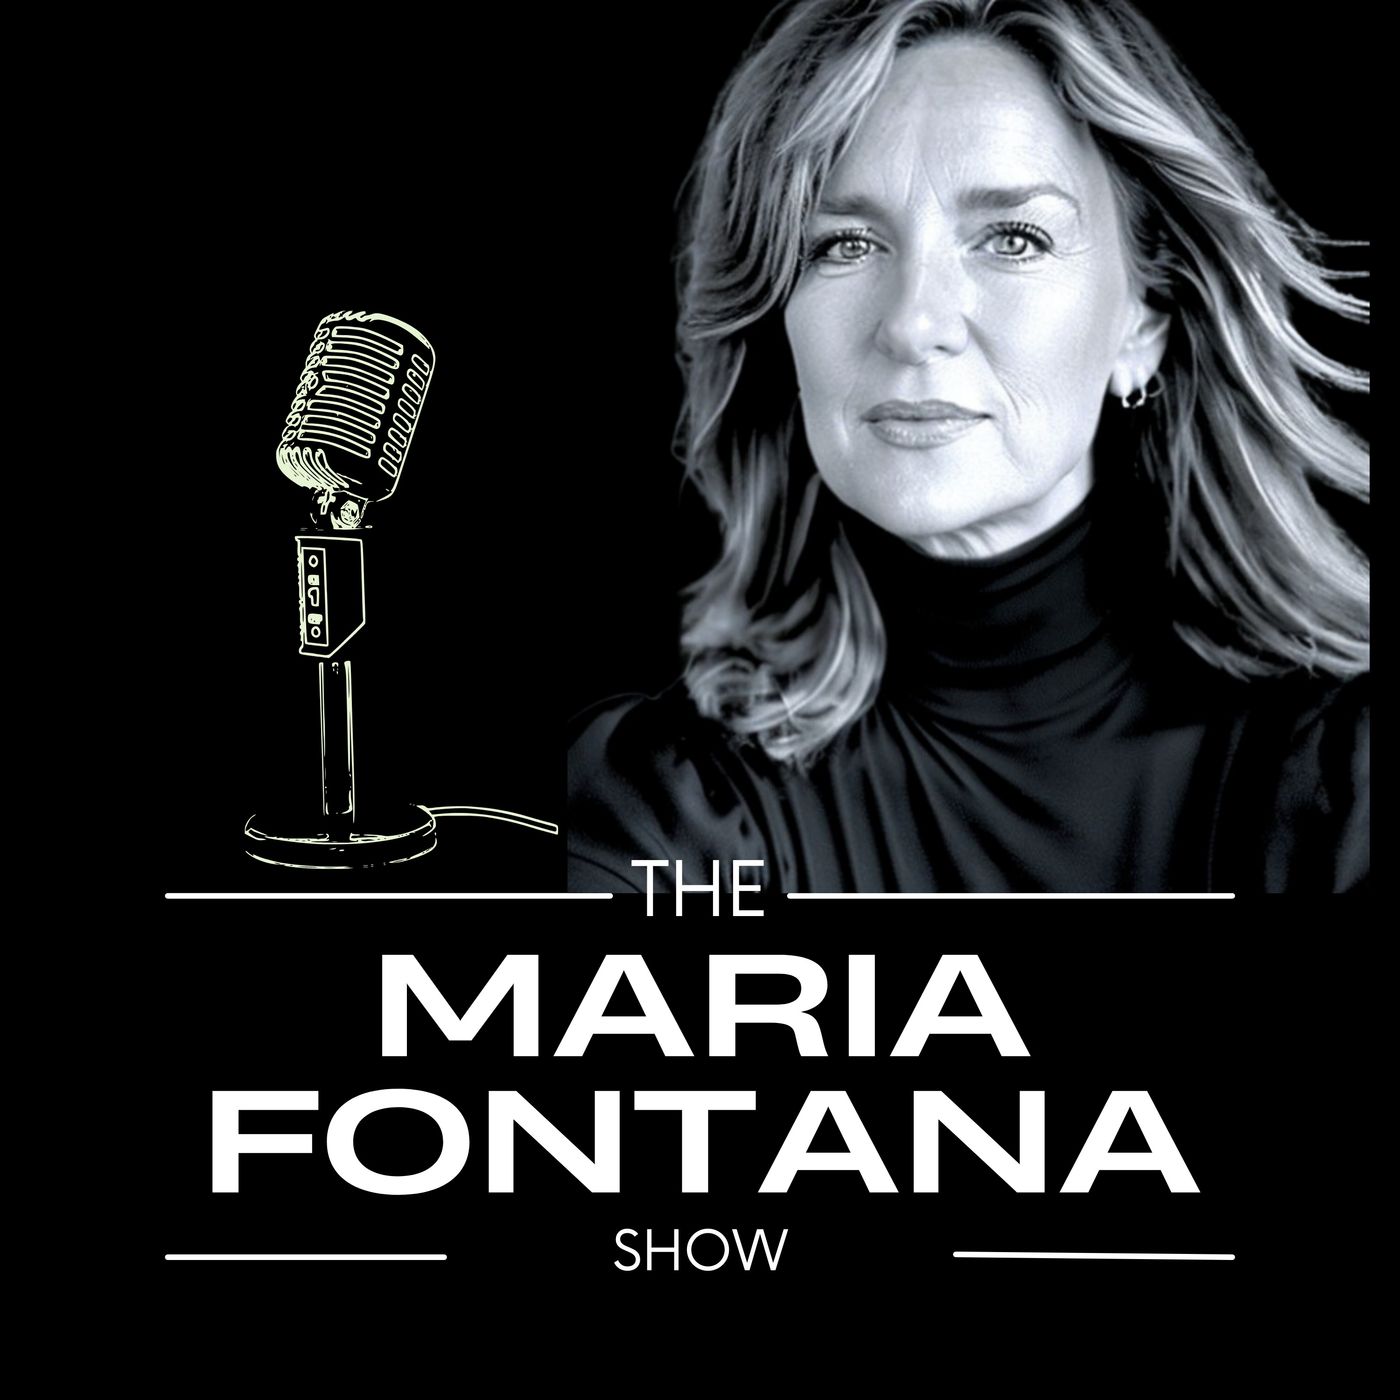 The Maria Fontana Show